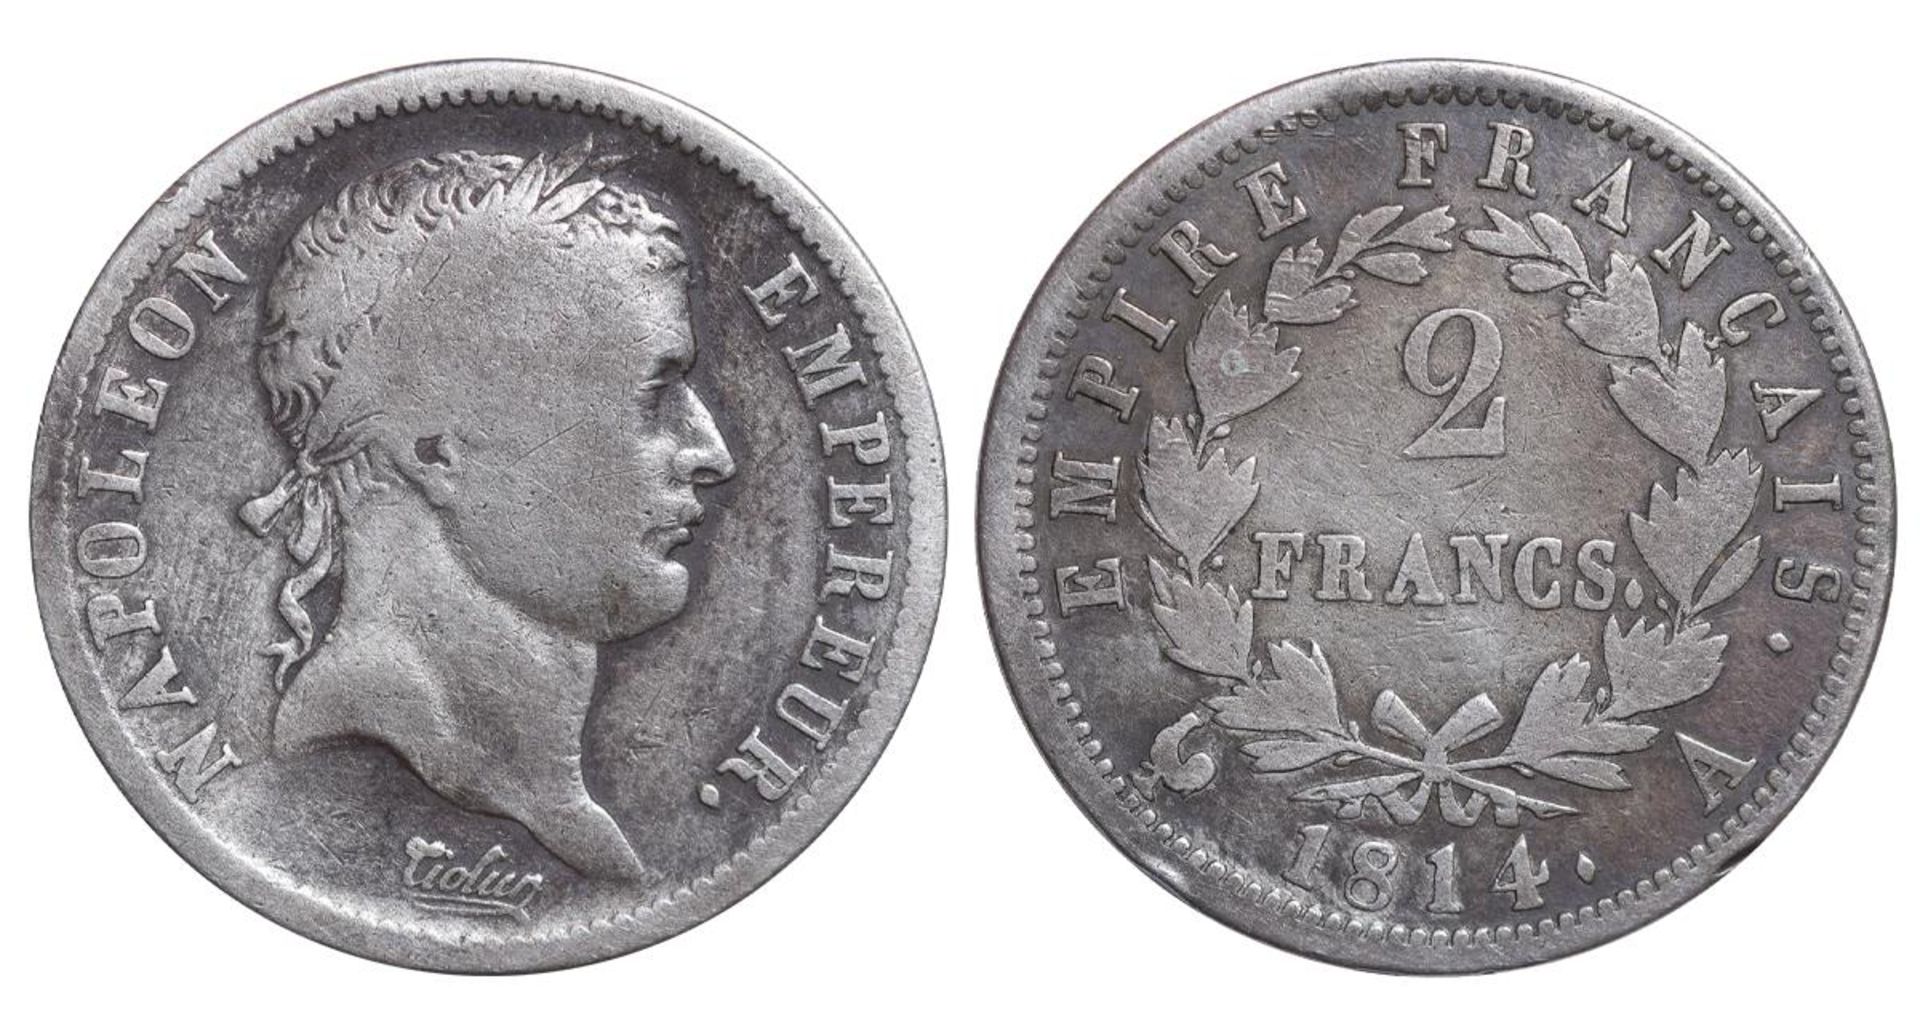 France, 2 Francs, 1814 year, A